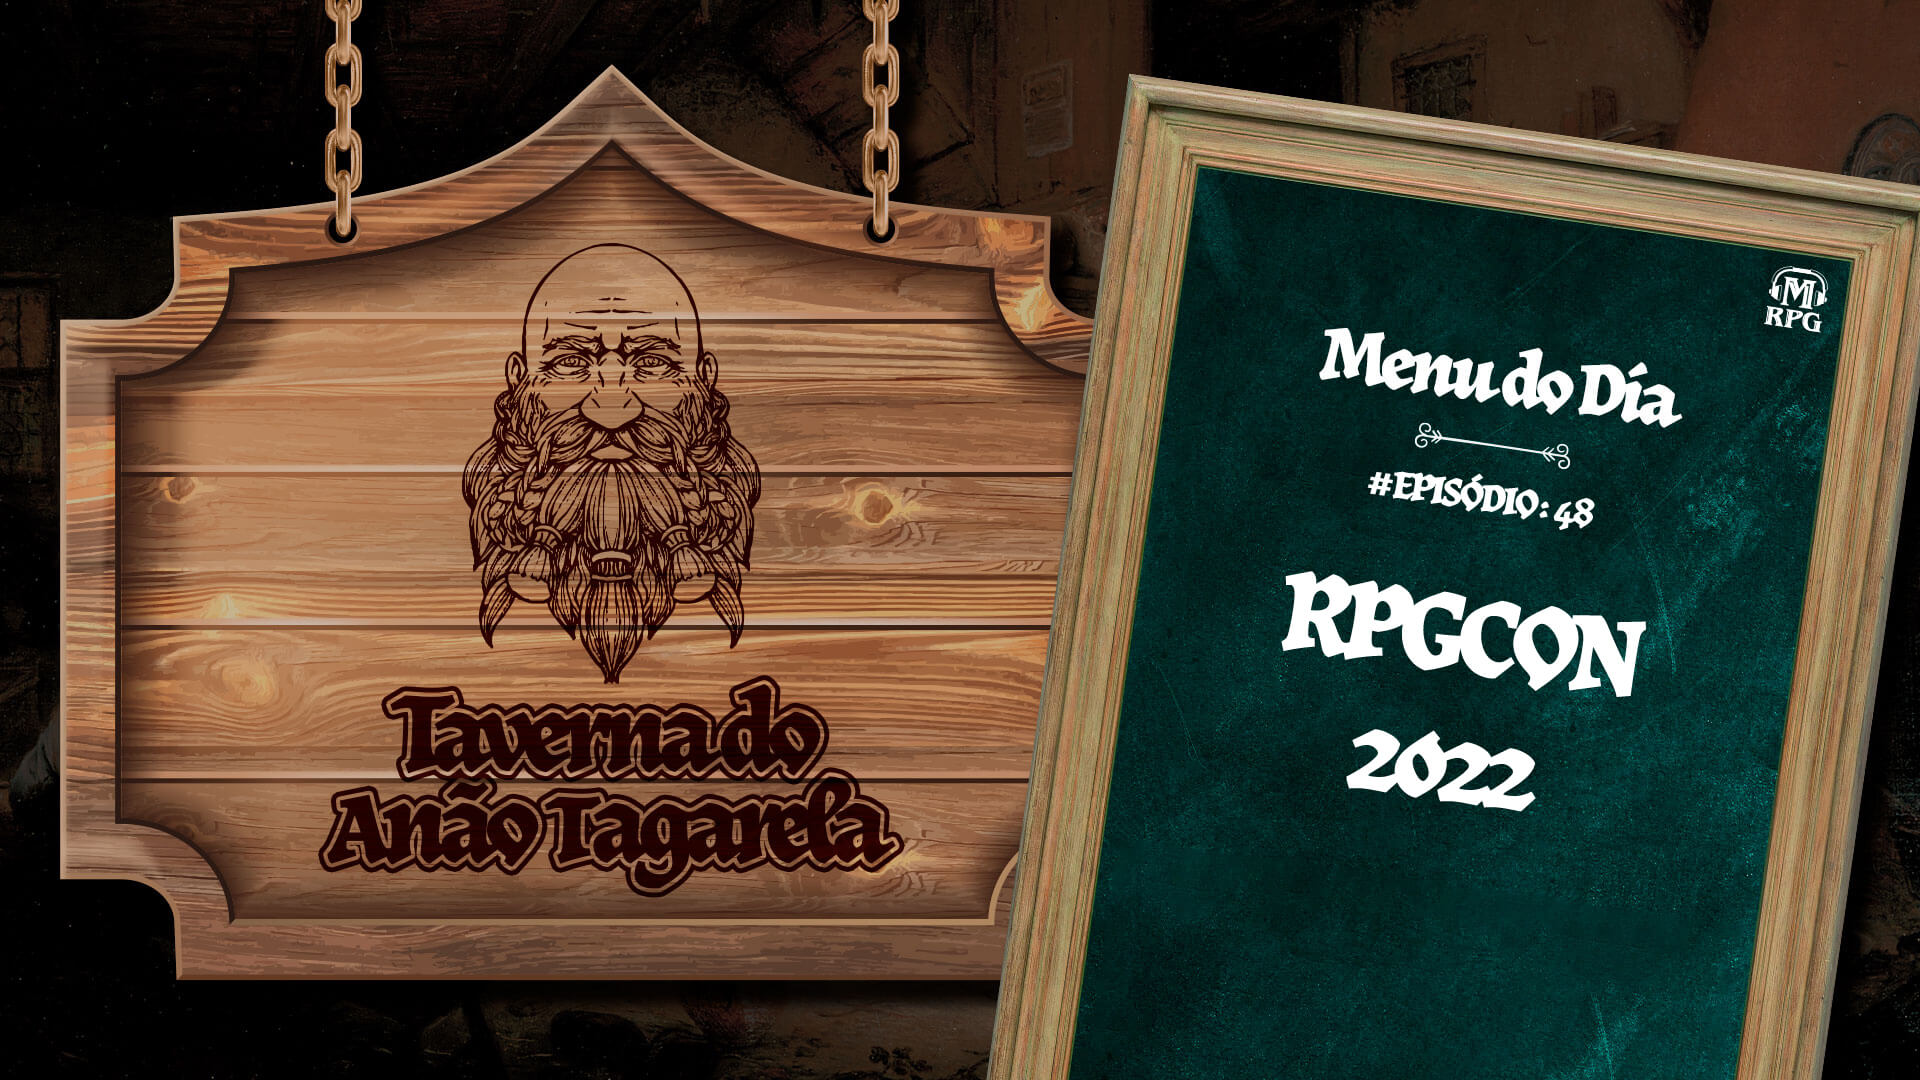 RPGCON 2022 – Taverna do Anão Tagarela #48